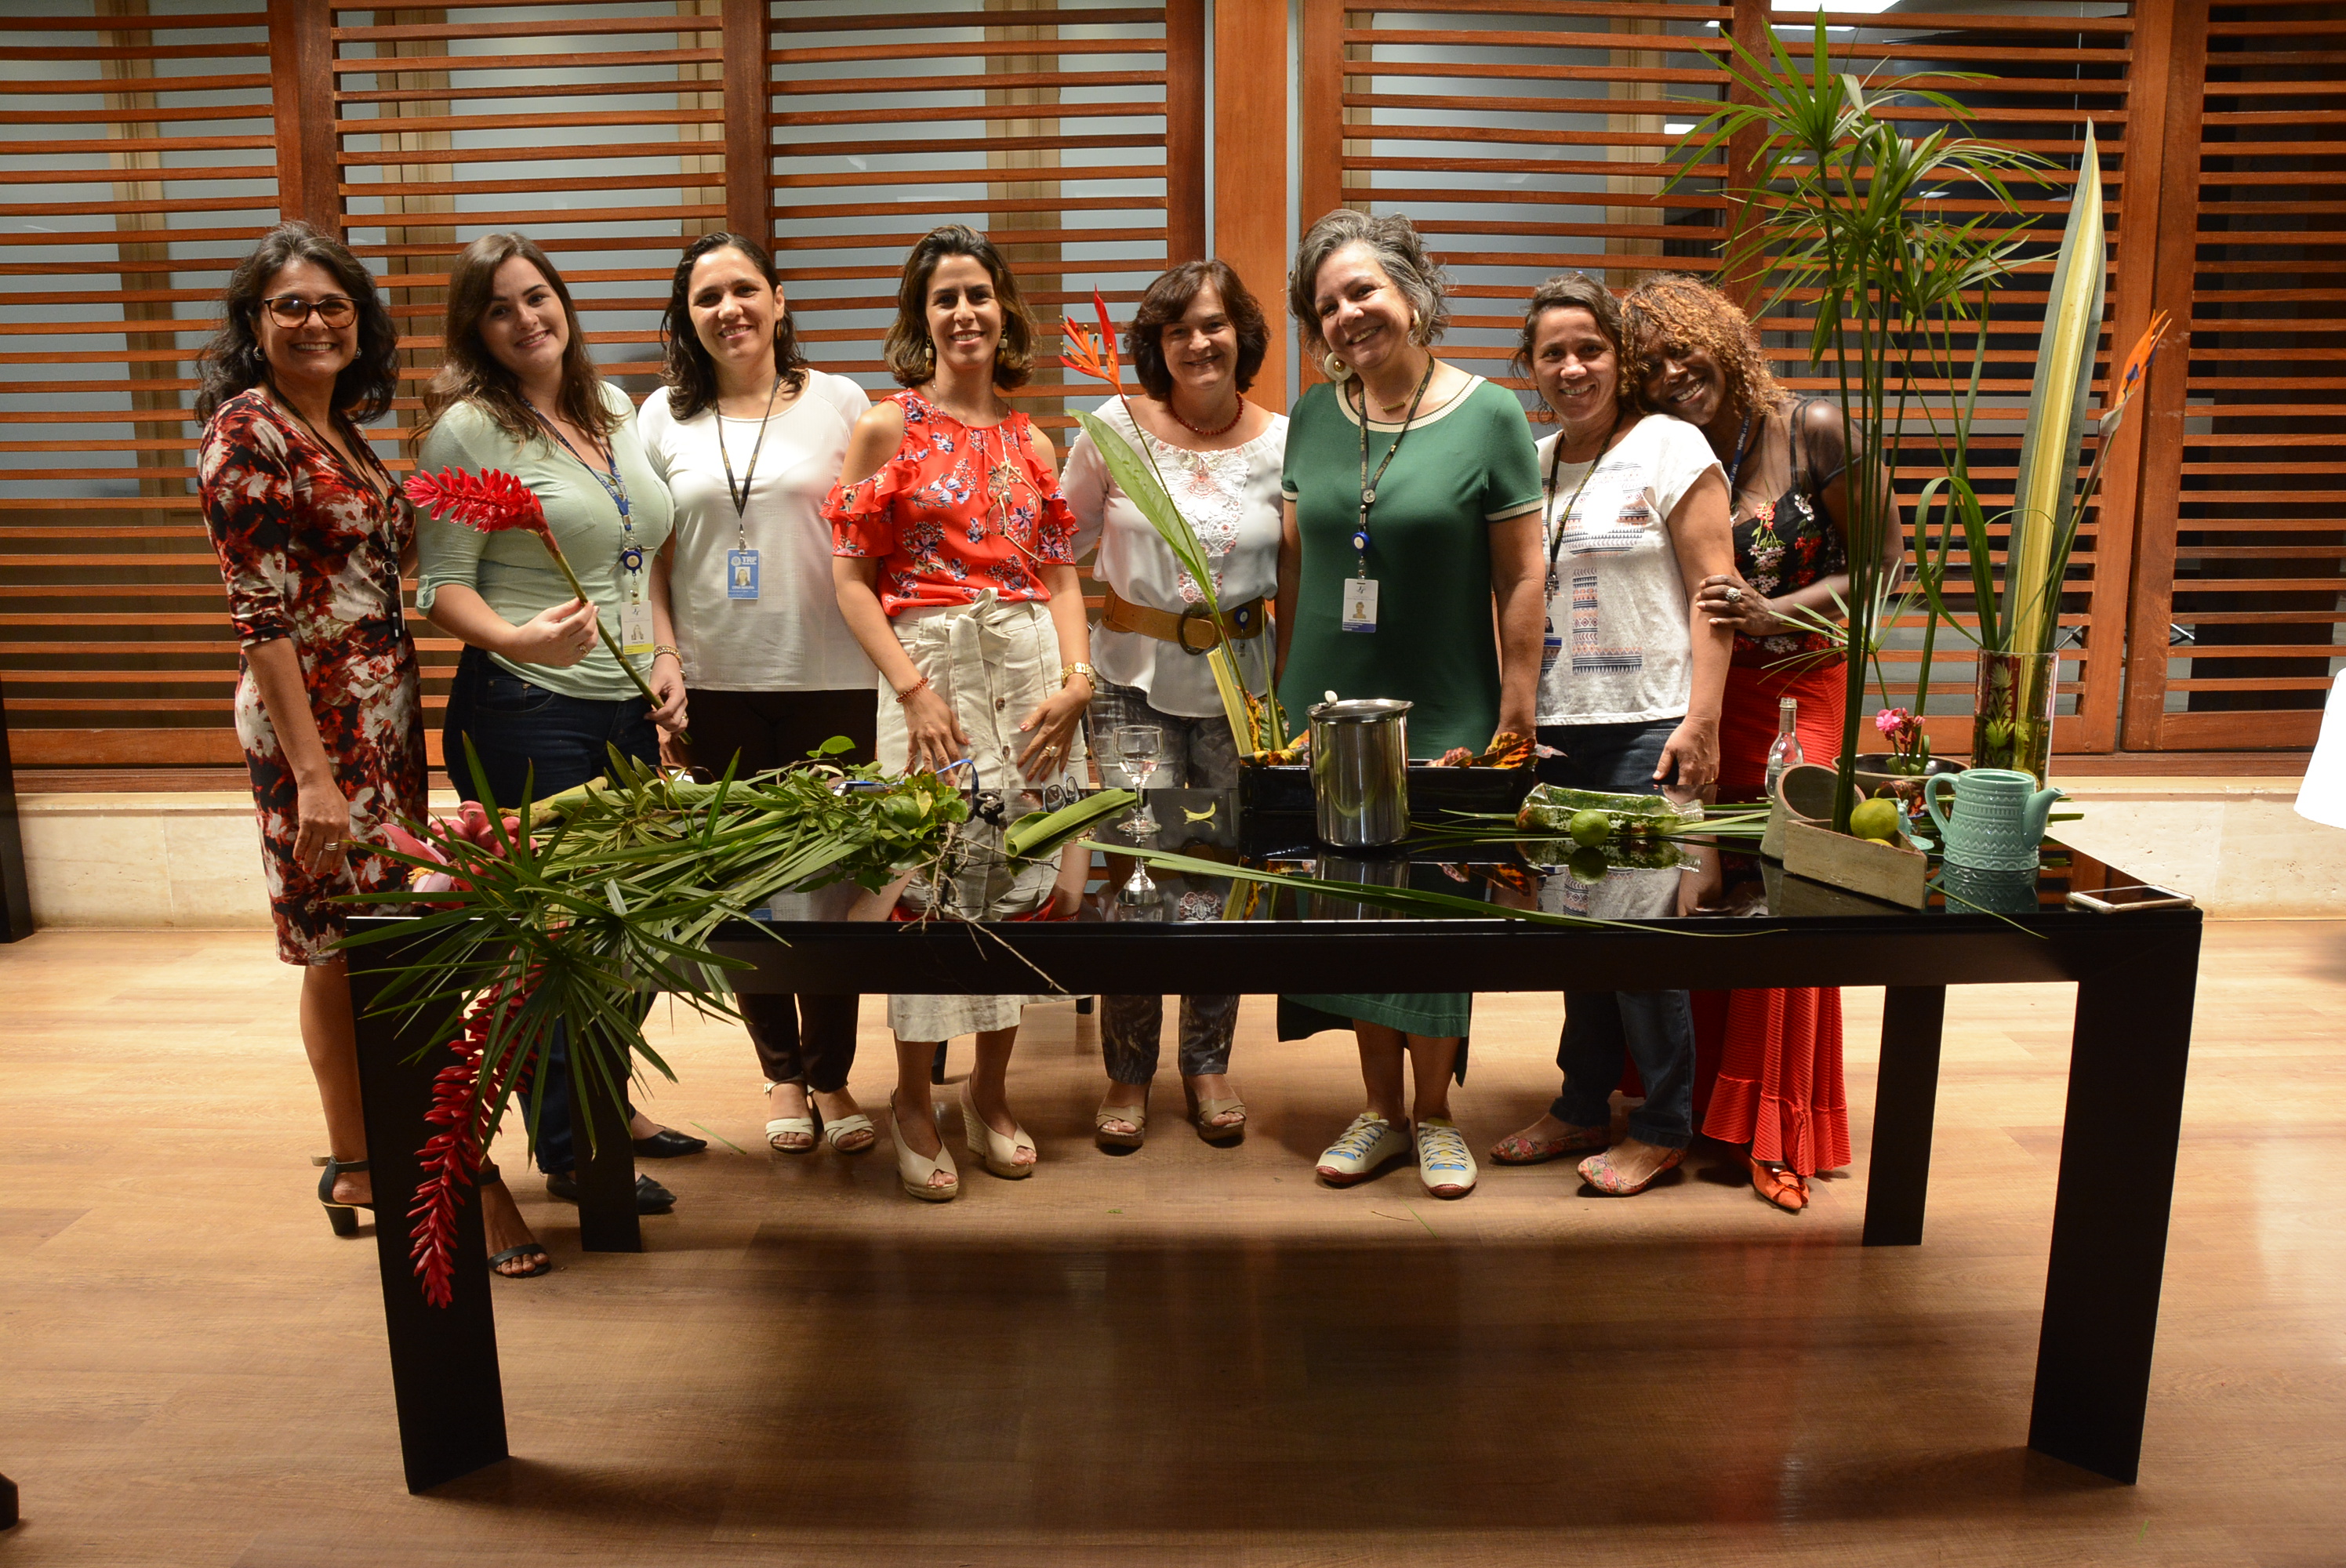 INSTITUCIONAL: Semana da Mulher: oficina aborda técnica de transformação de plantas naturais em arranjos decorativos